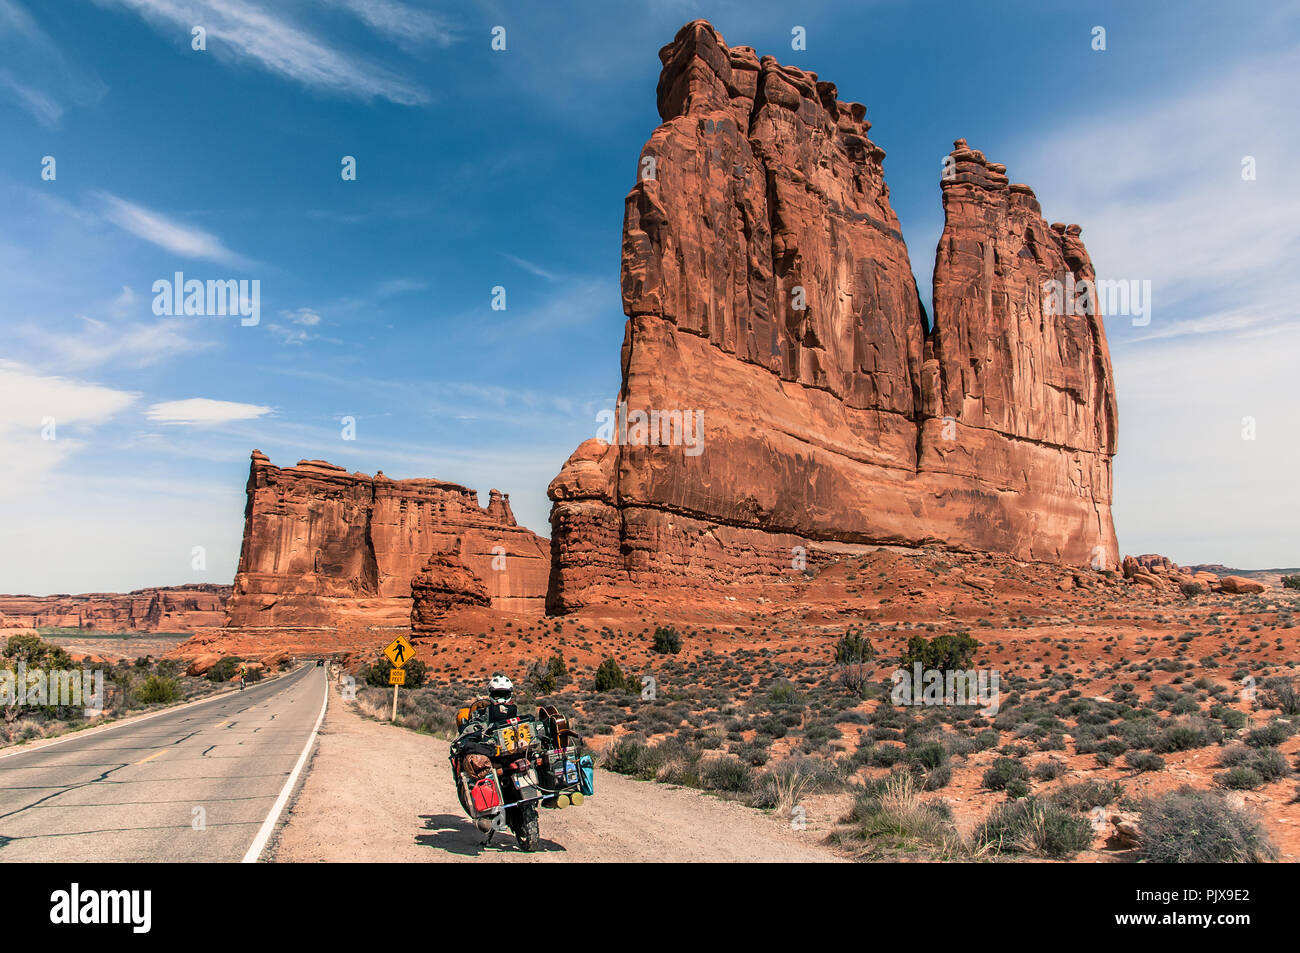 Moto sur route escalade trad, Arches National Park, Moab, Utah, USA Banque D'Images